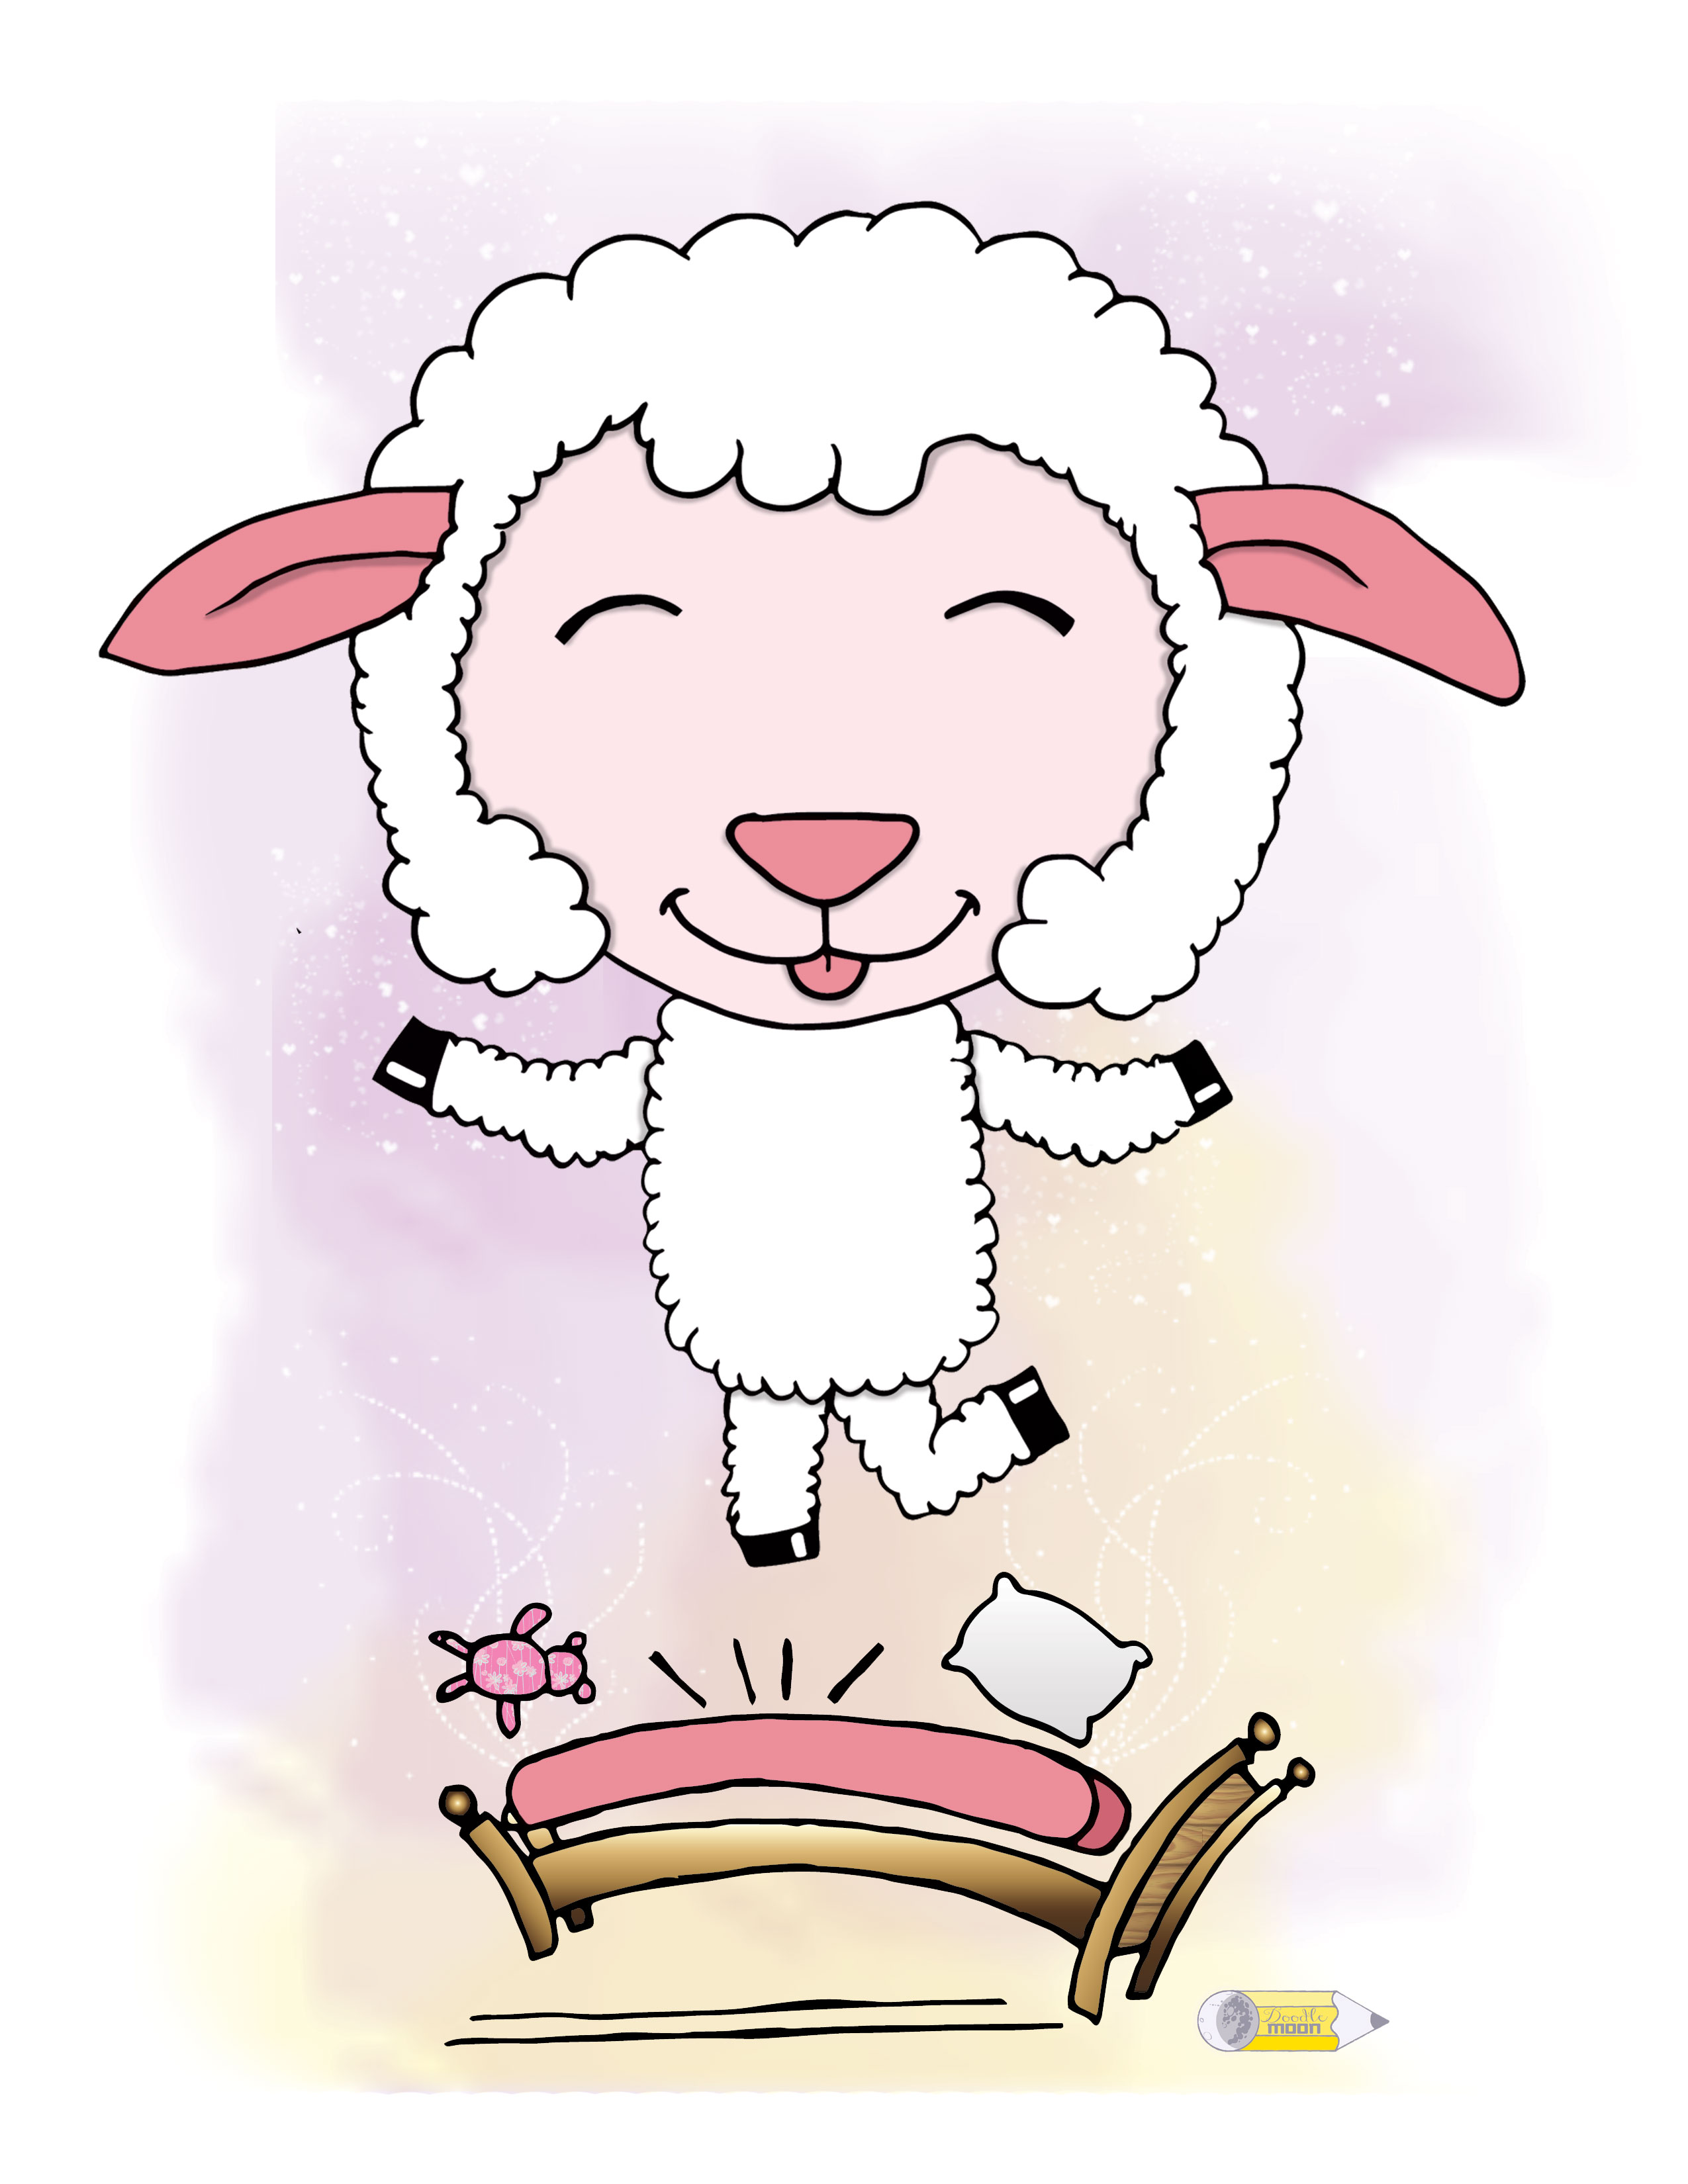 Wake Up and Live Lamb